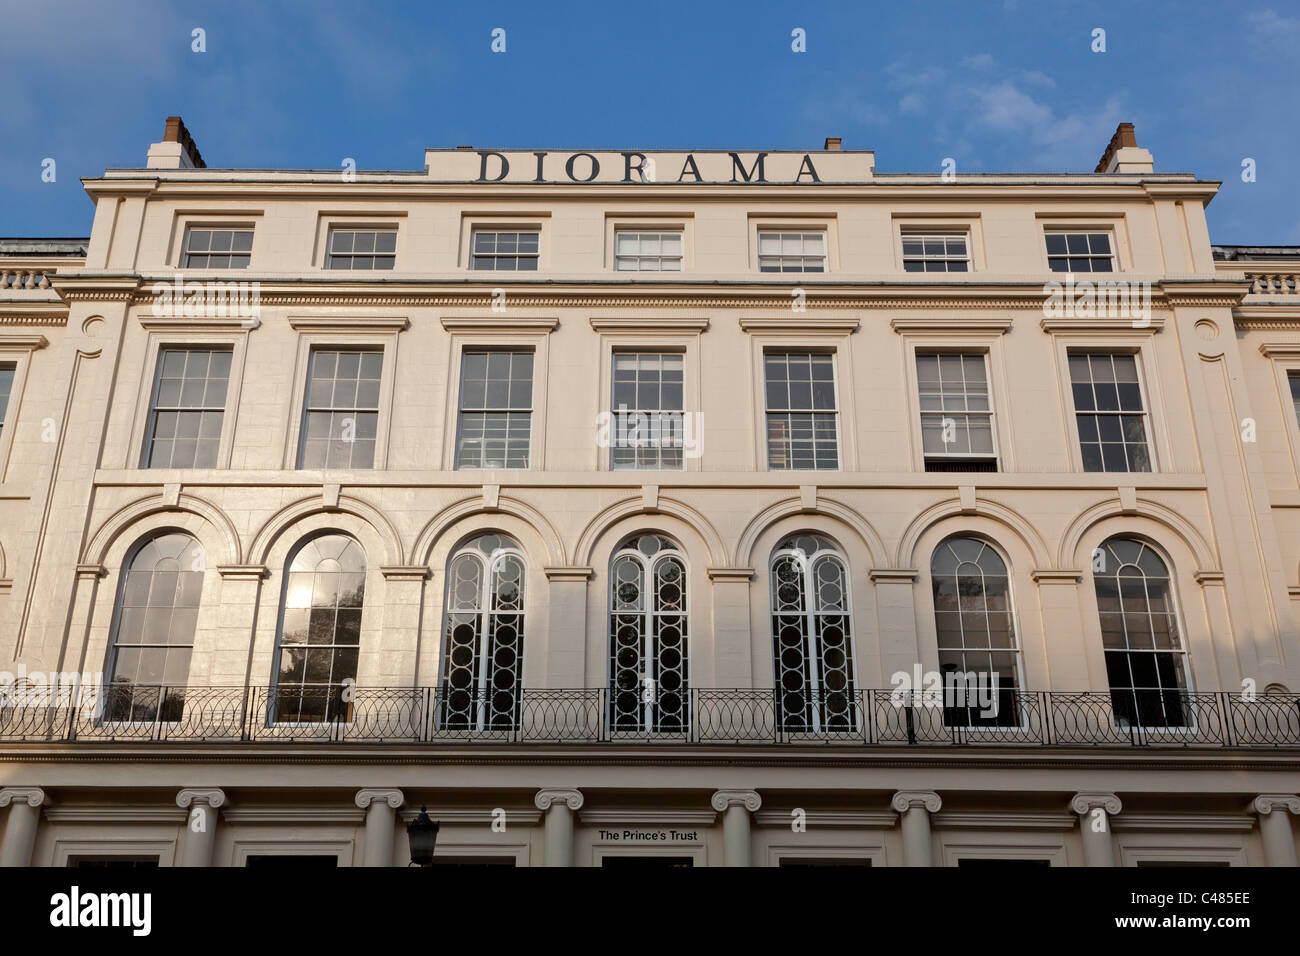 La façade du bâtiment, Nash Diorama conçu maintenant le QG de la Prince's Trust, dans Park Square, London. Banque D'Images